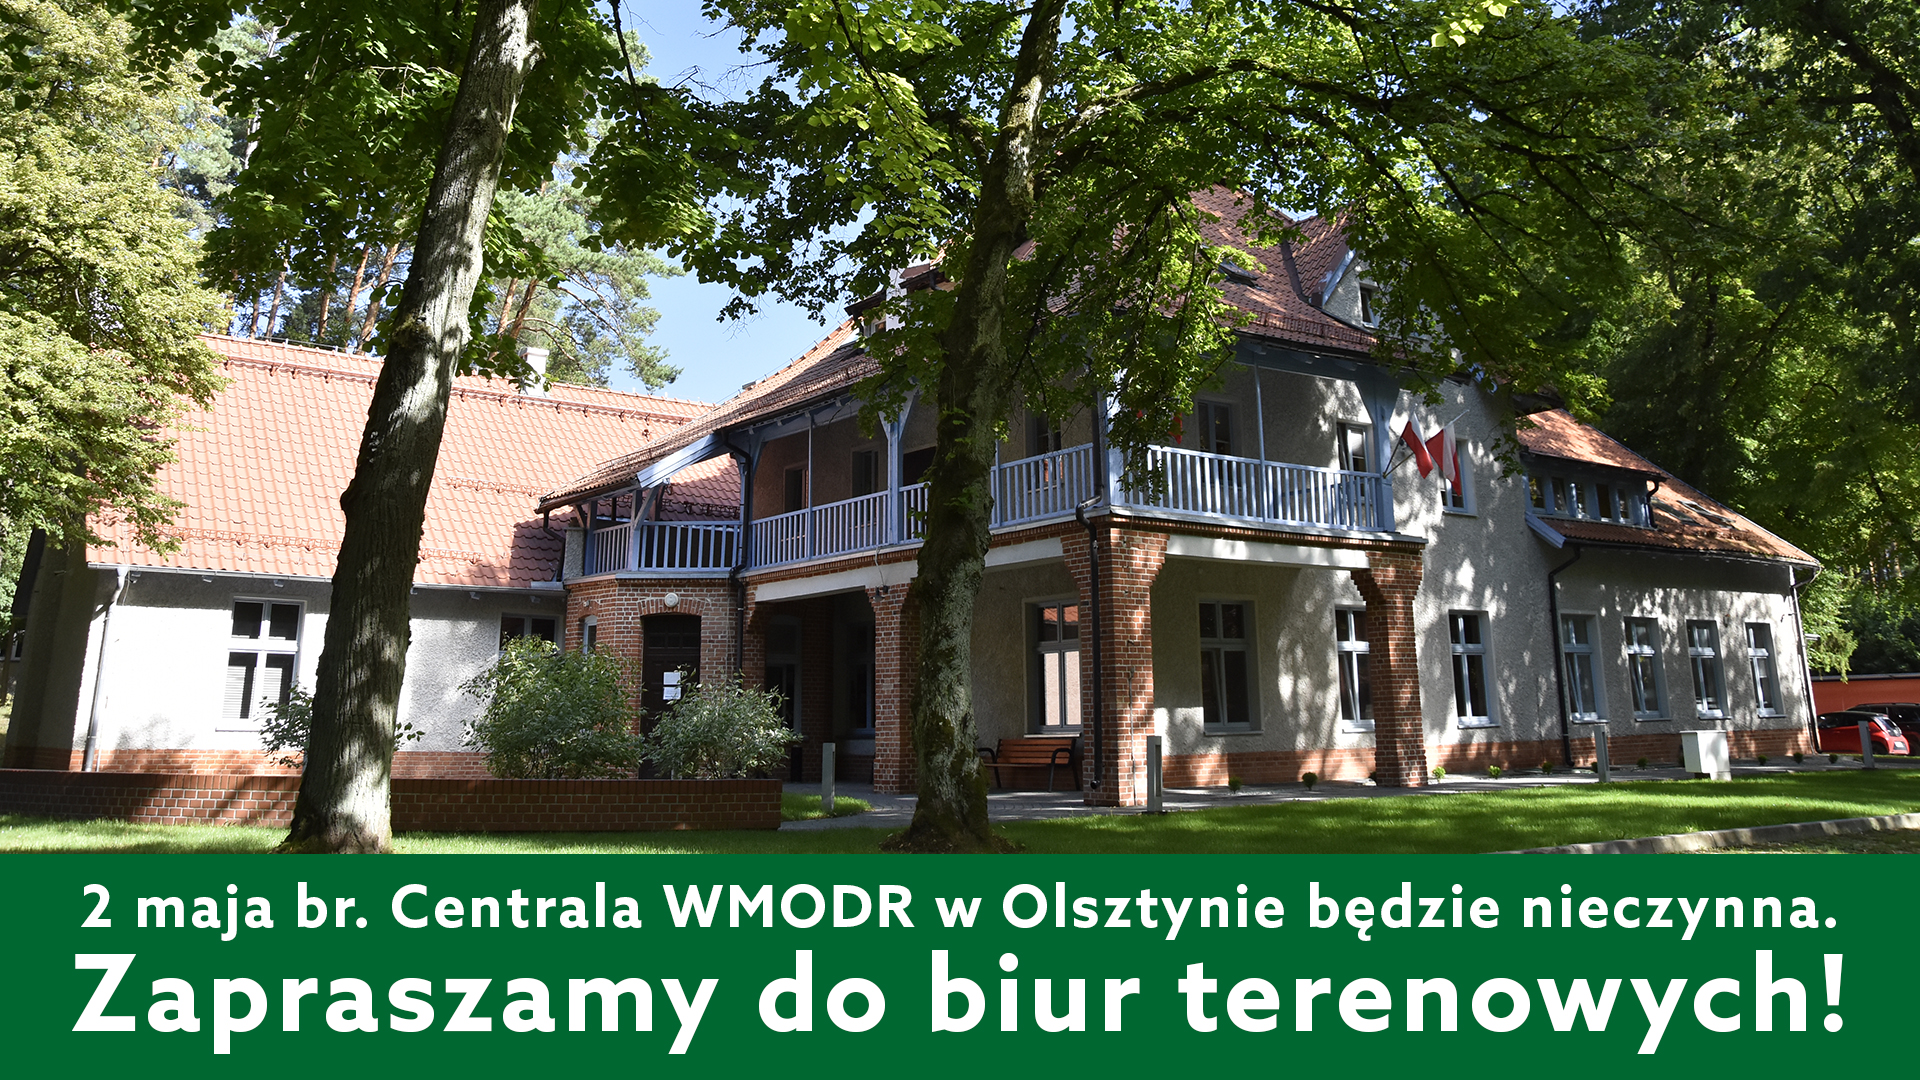 2 maja Centrala WMODR w Olsztynie będzie nieczynna